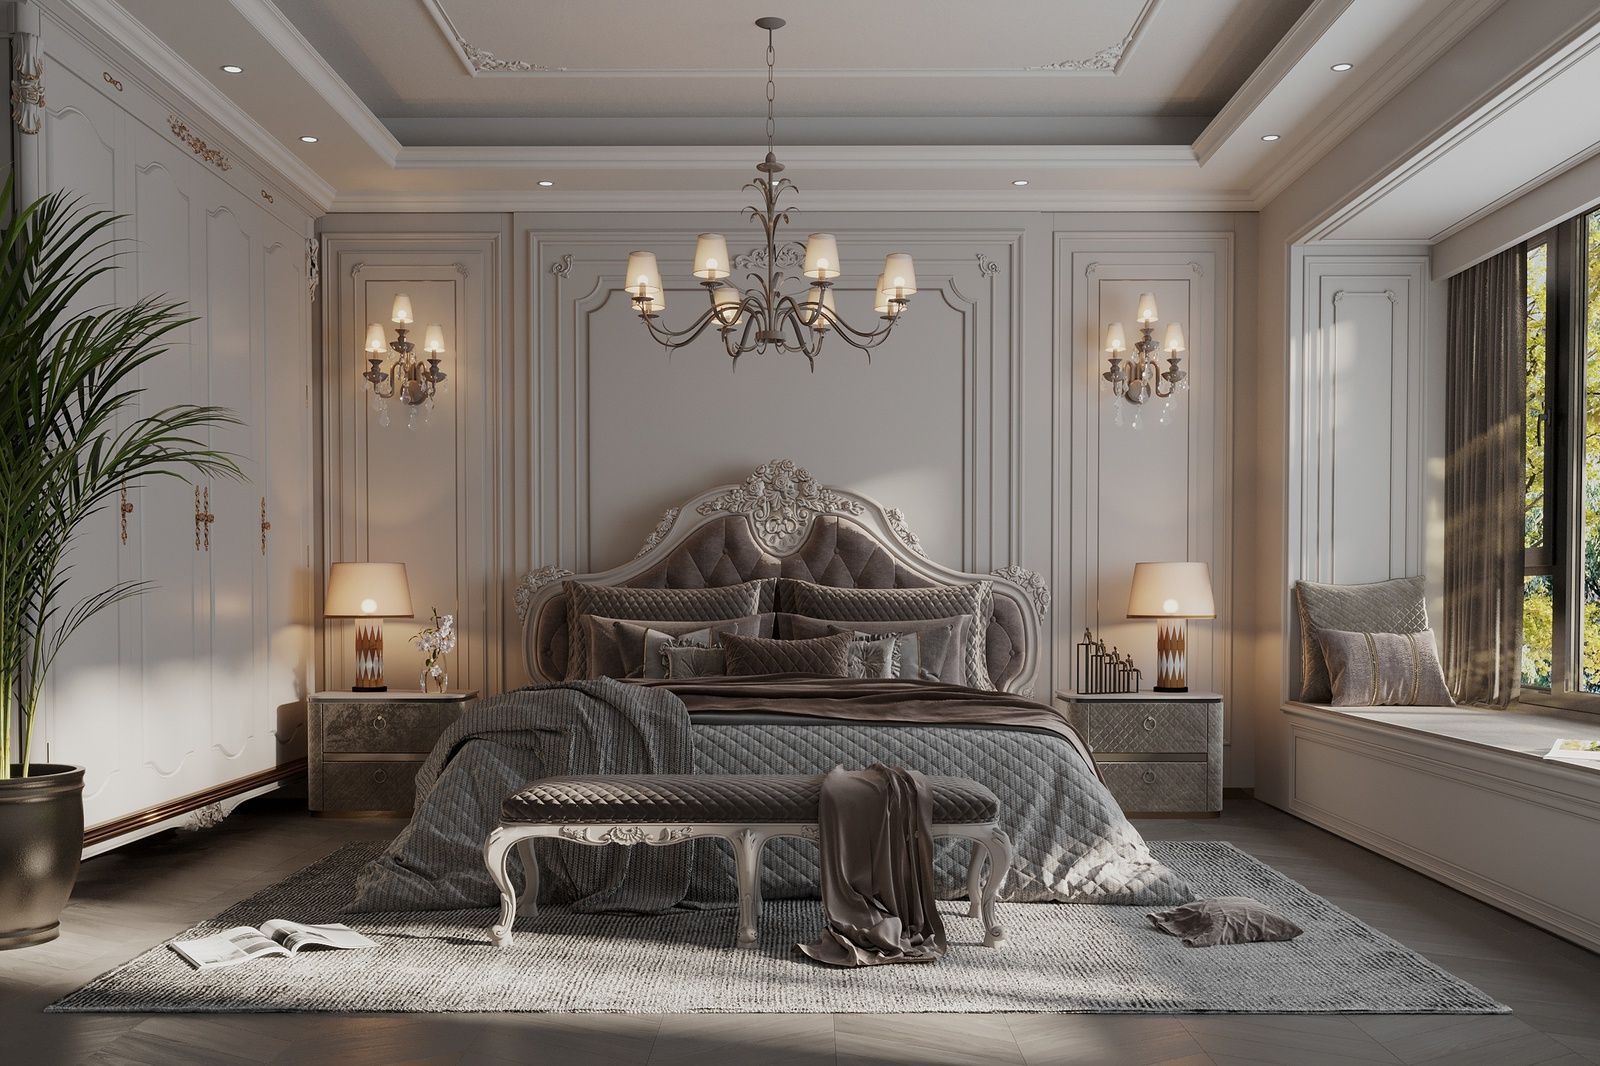 Phòng ngủ mang phong cách cổ điển trầm lắng, sang tròn với ánh sáng từ cửa sổ lớn